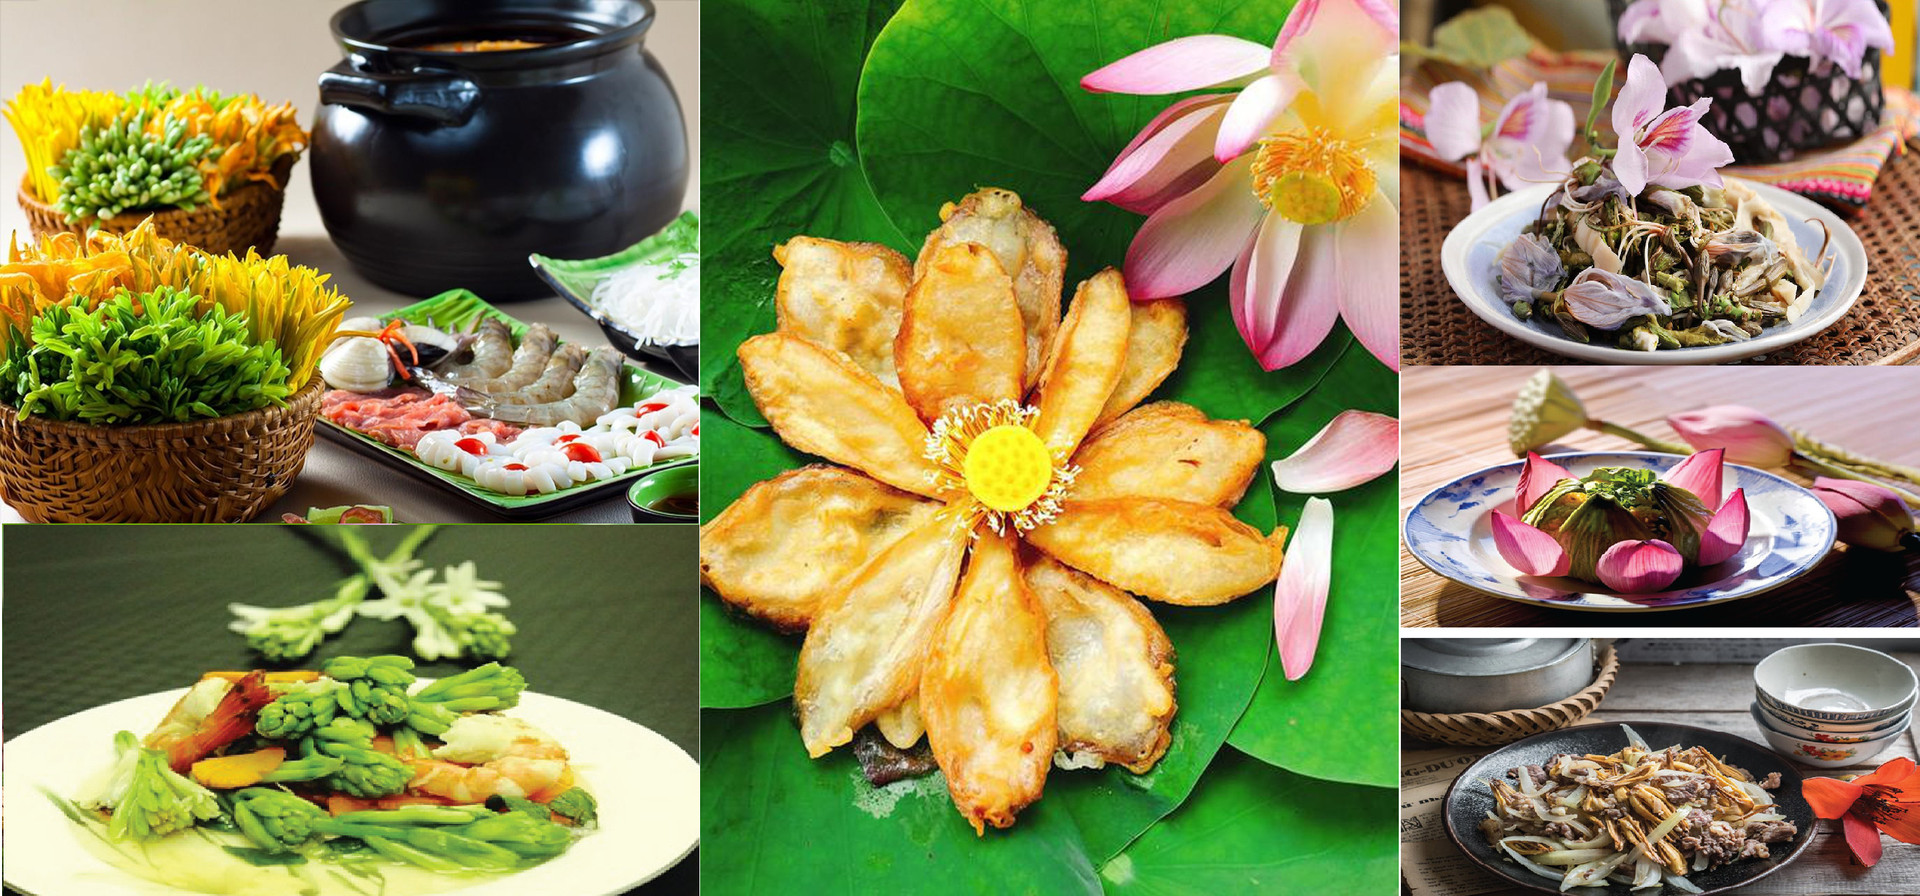 5 đặc sản ẩm thực Việt Nam được 2 tổ chức thế giới xác lập kỷ lục - Ảnh 2.